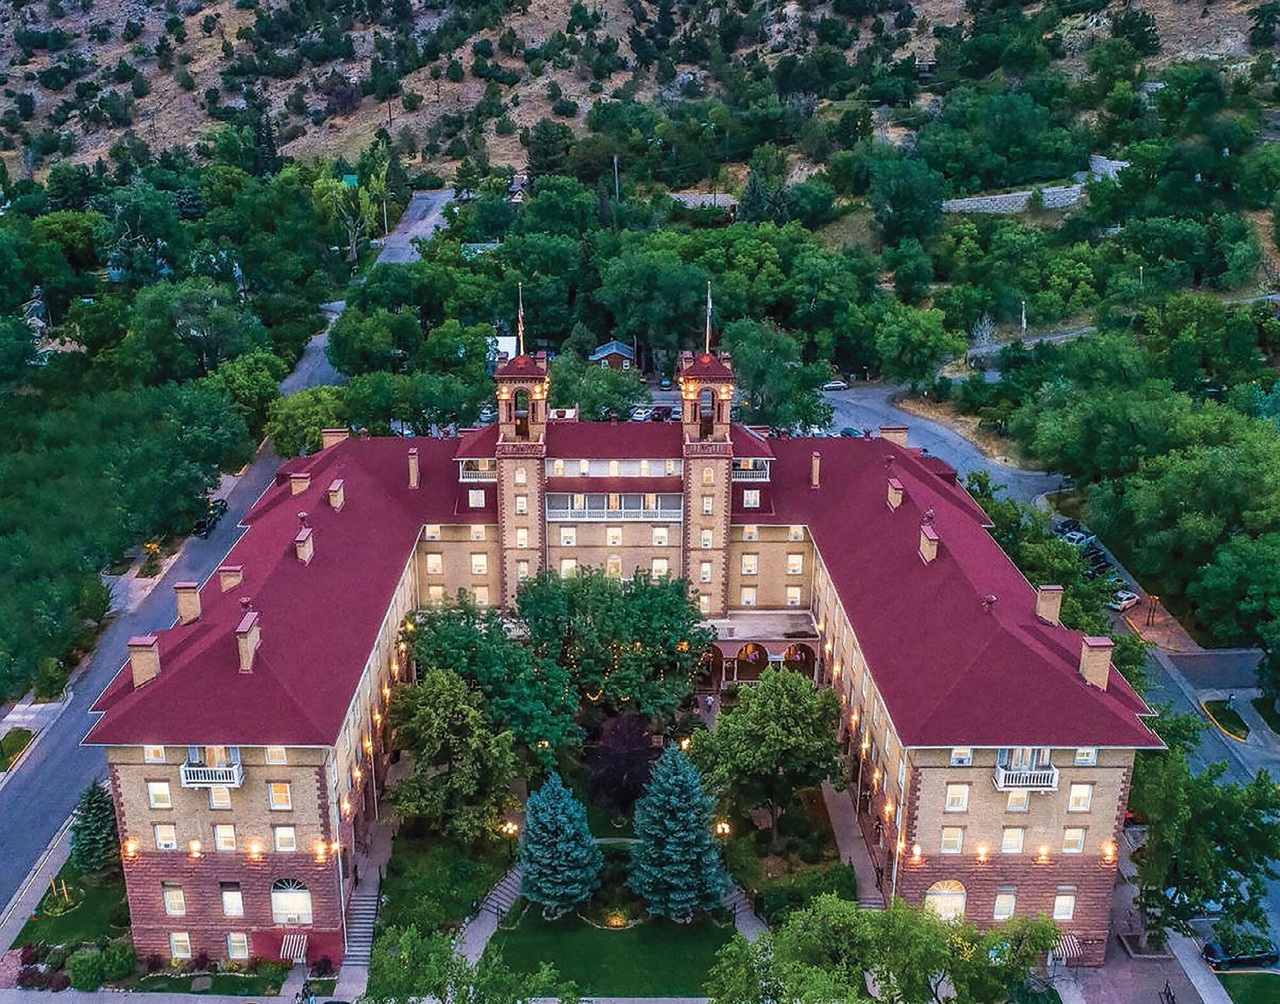 Hotel Colorado PHOTO: COURTESY OF HOTEL COLORADO